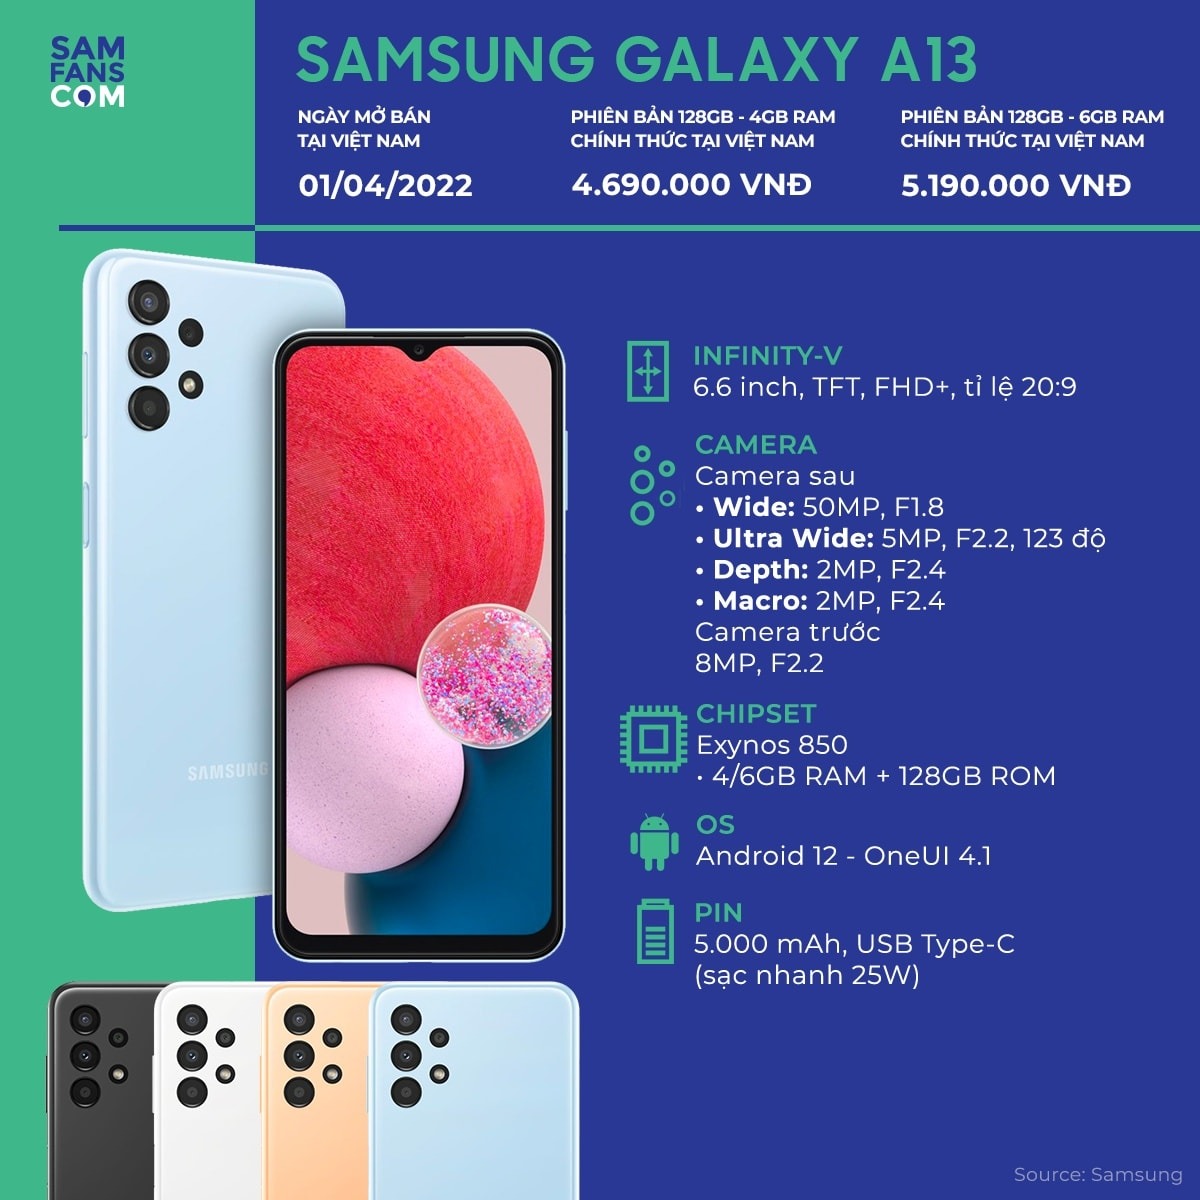 Samsung Galaxy A13 5G ra mắt: Màn hình 90Hz, Dimensity 700 và pin 5.000 mAh - 1648447042